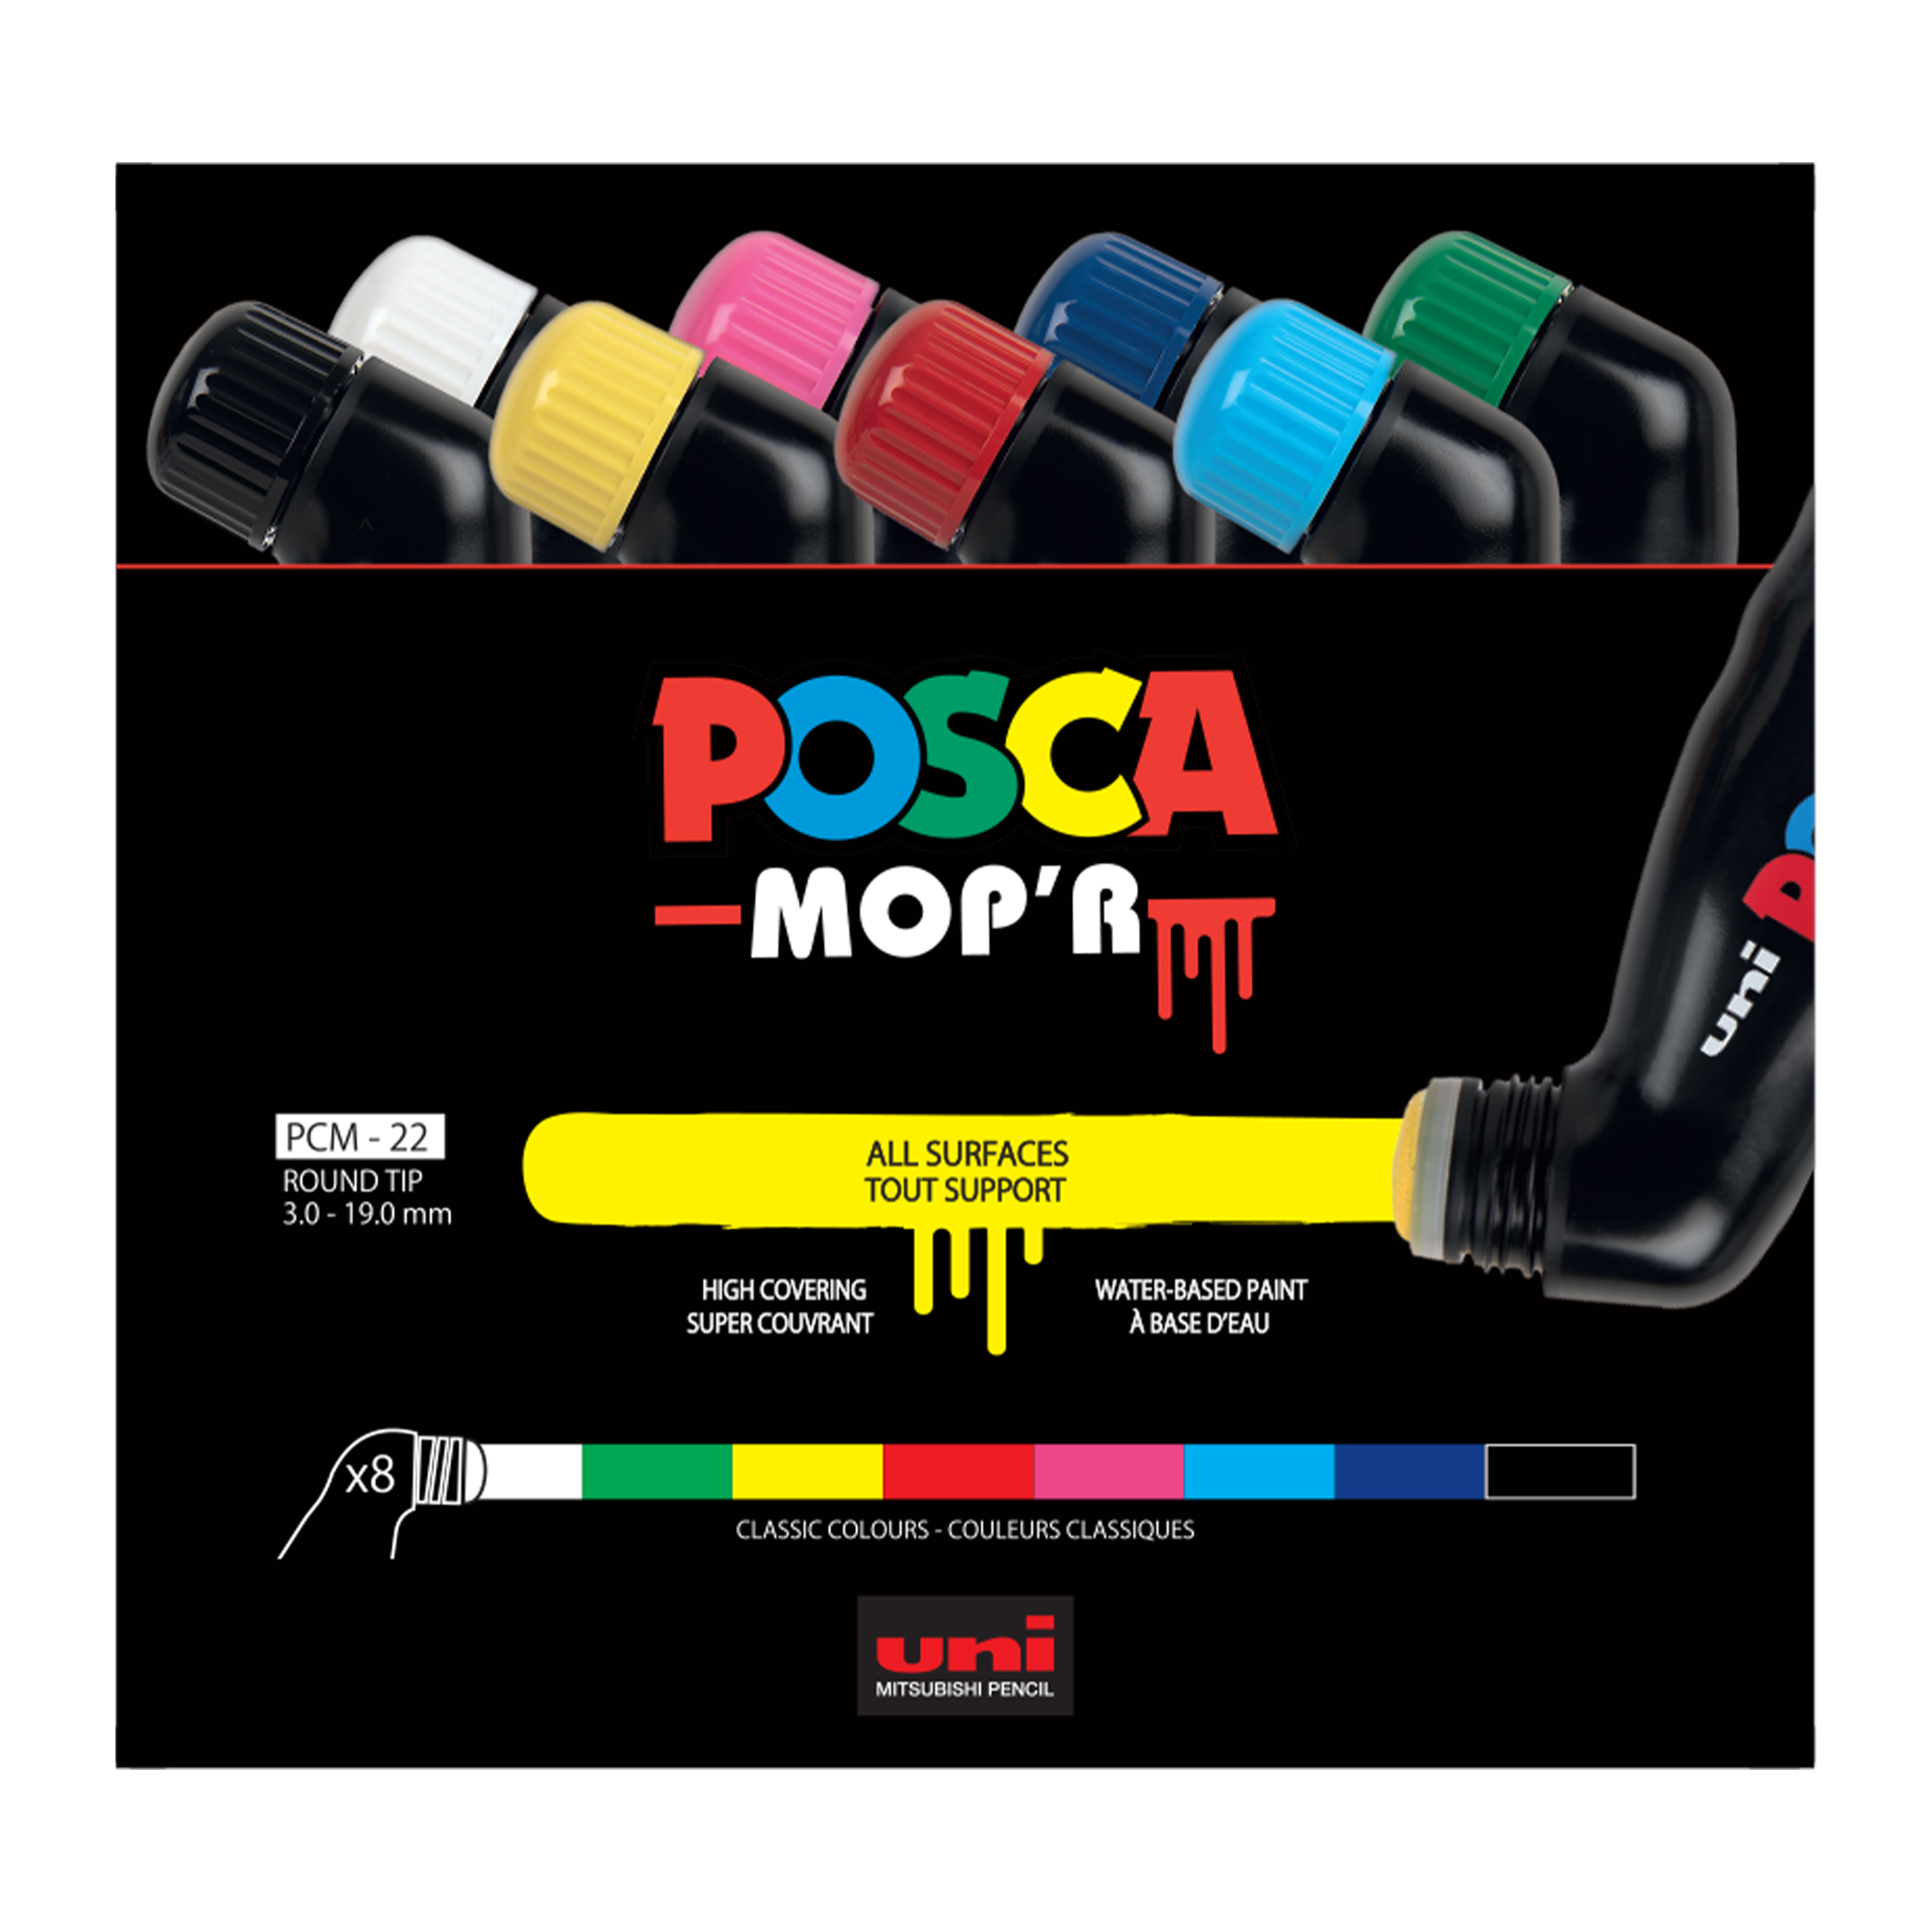 Posca Paint Pens - MOPR - PCM22 – ART QUILT SUPPLIES - 2 Sew Textiles